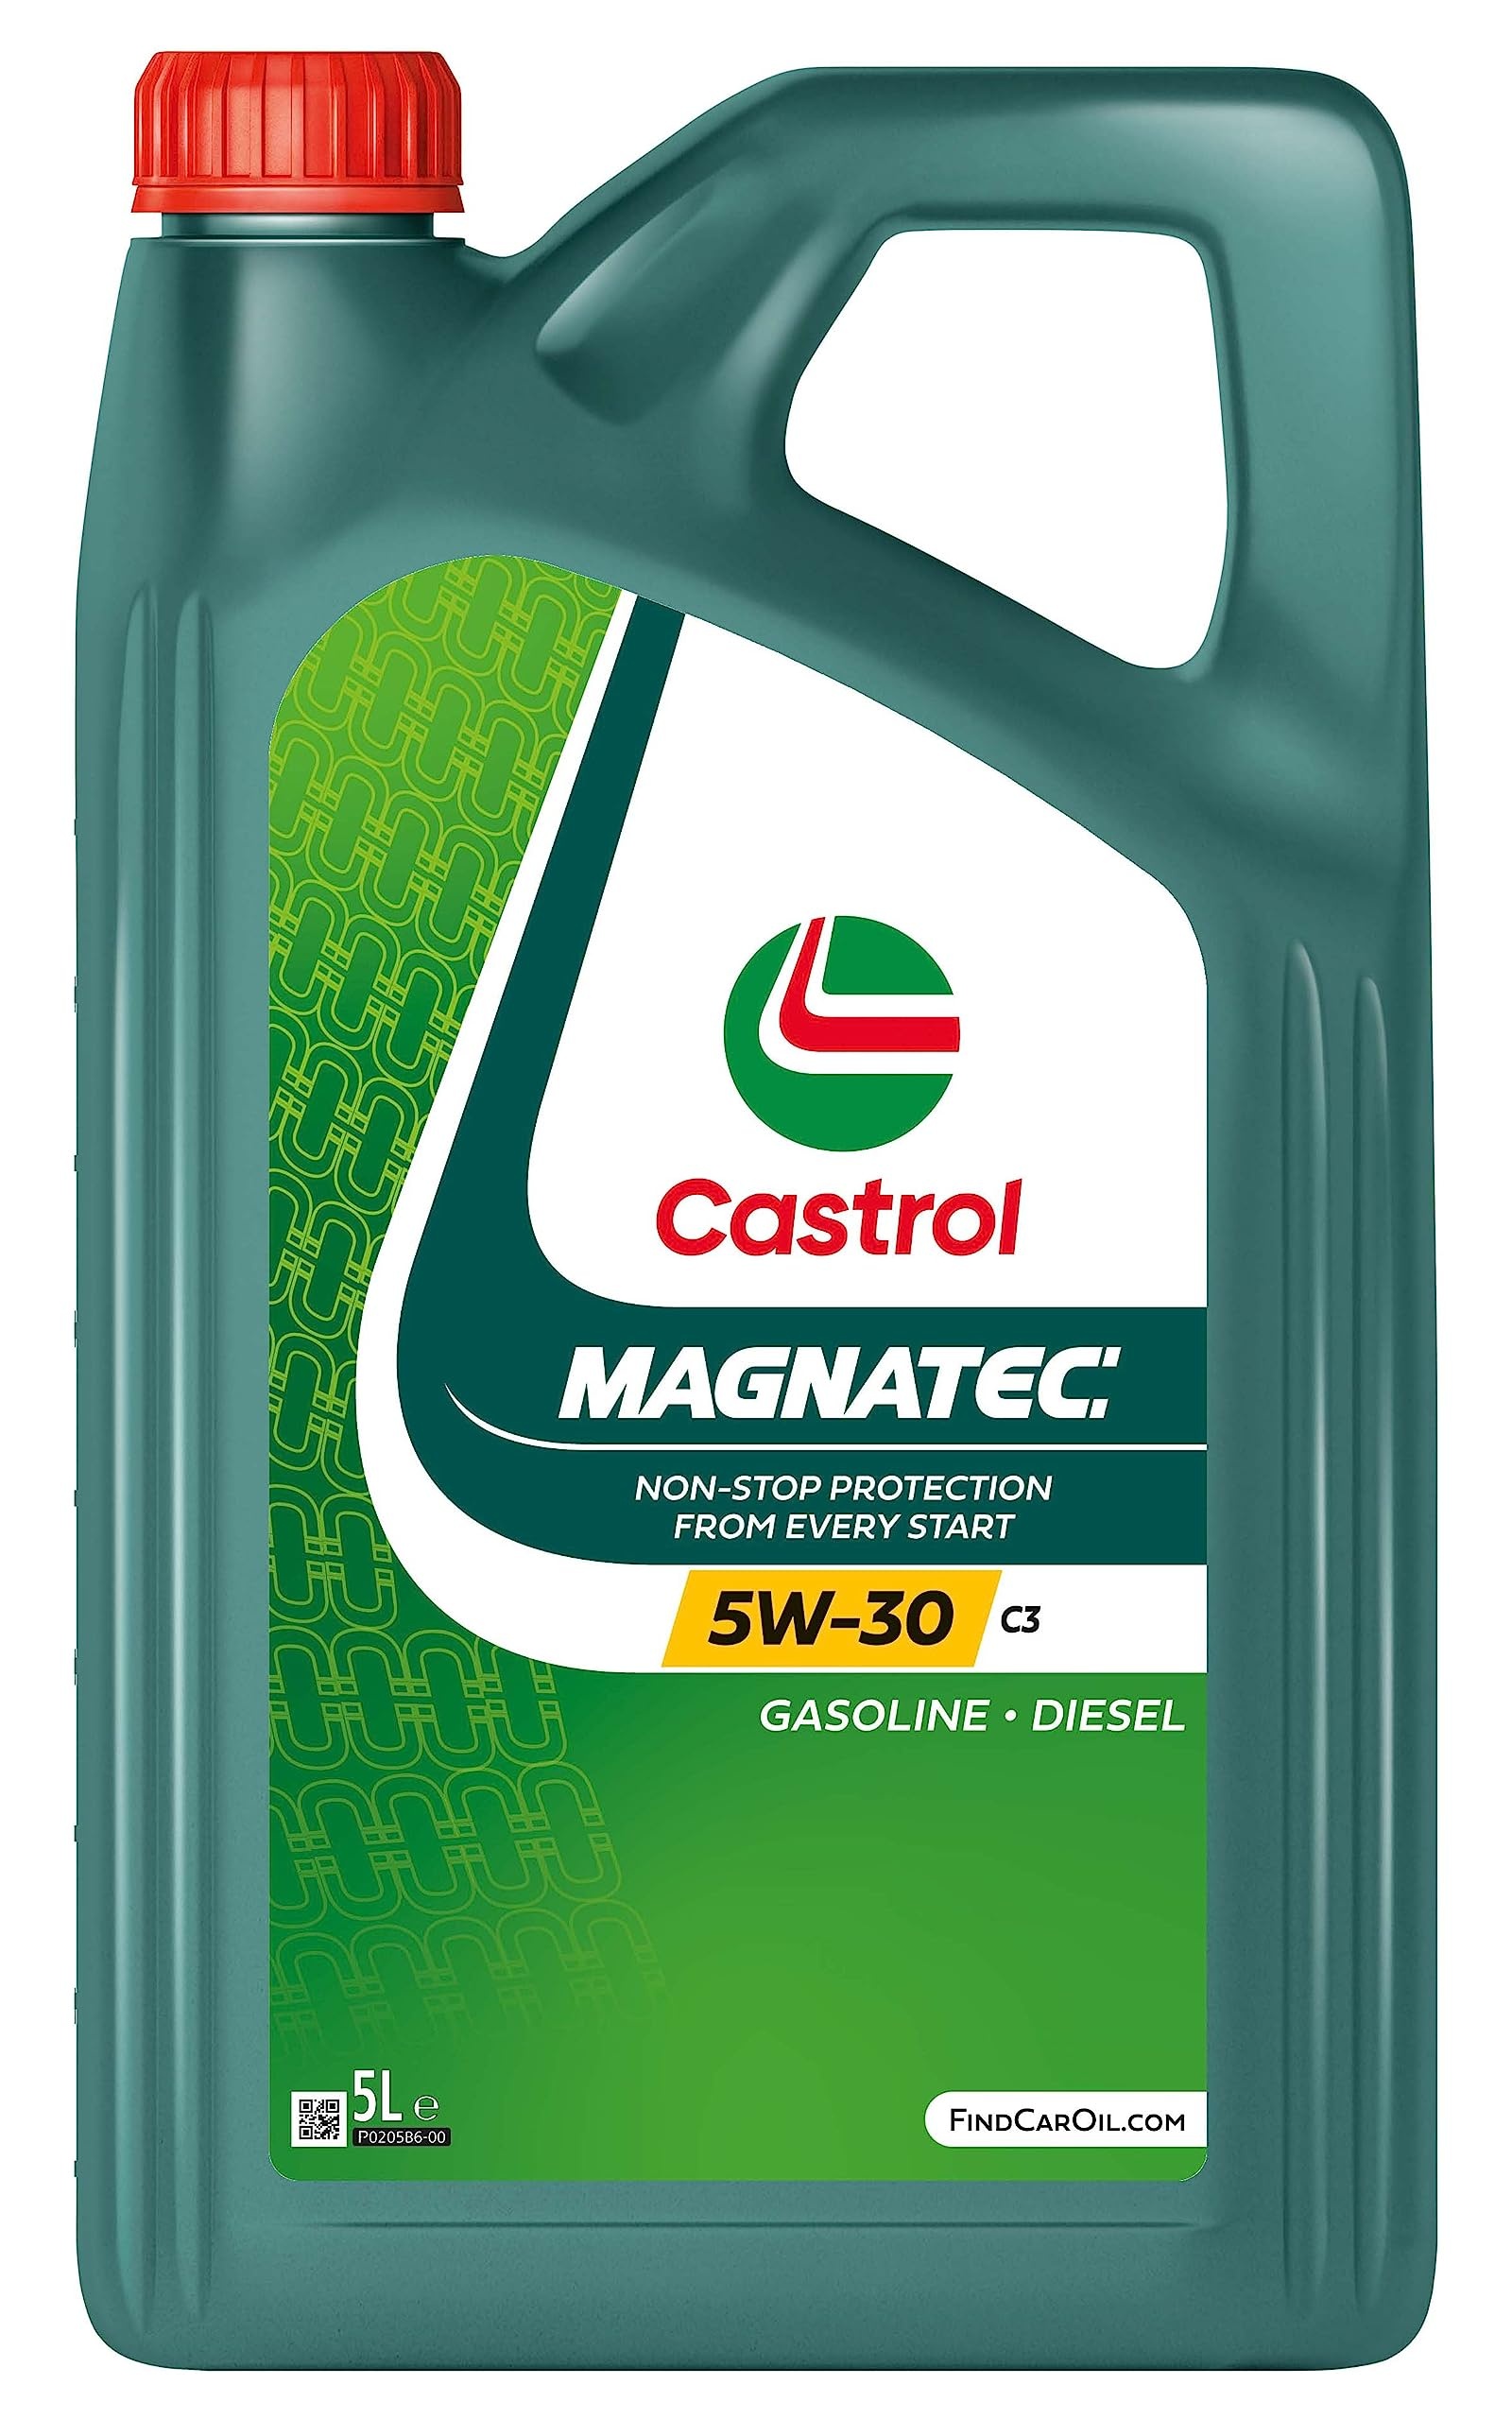 castrol magnatec 5w-30 c3 5l